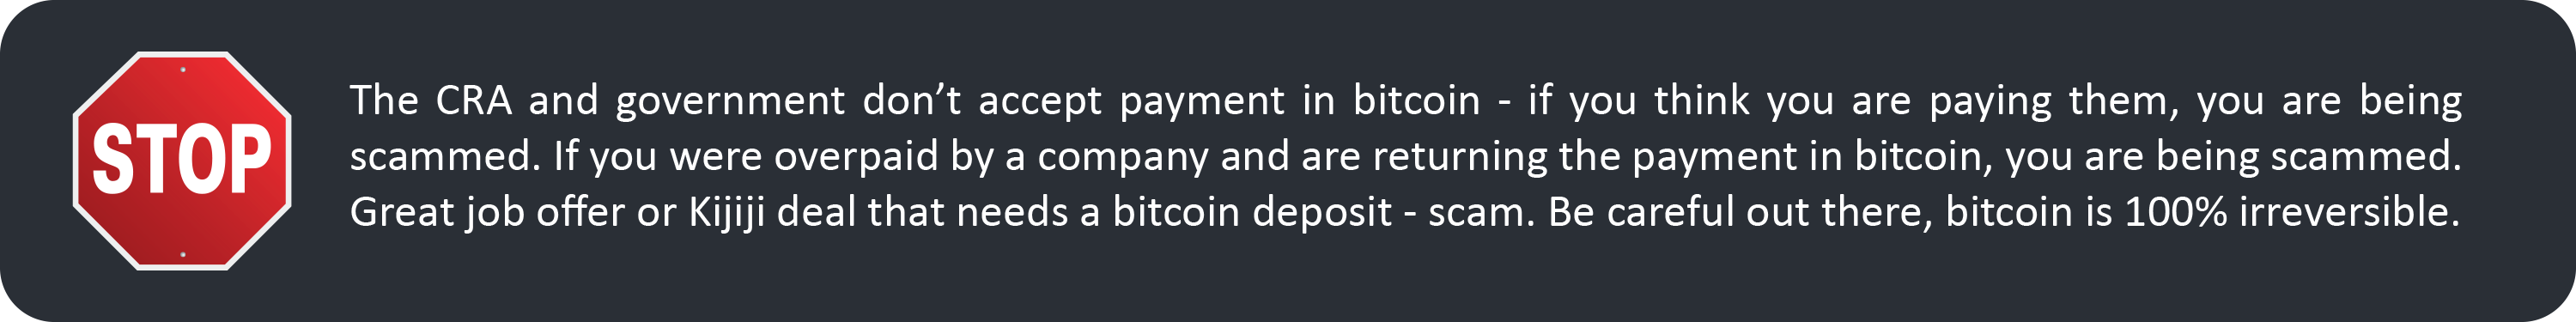 Bitcoin4U disclaimer